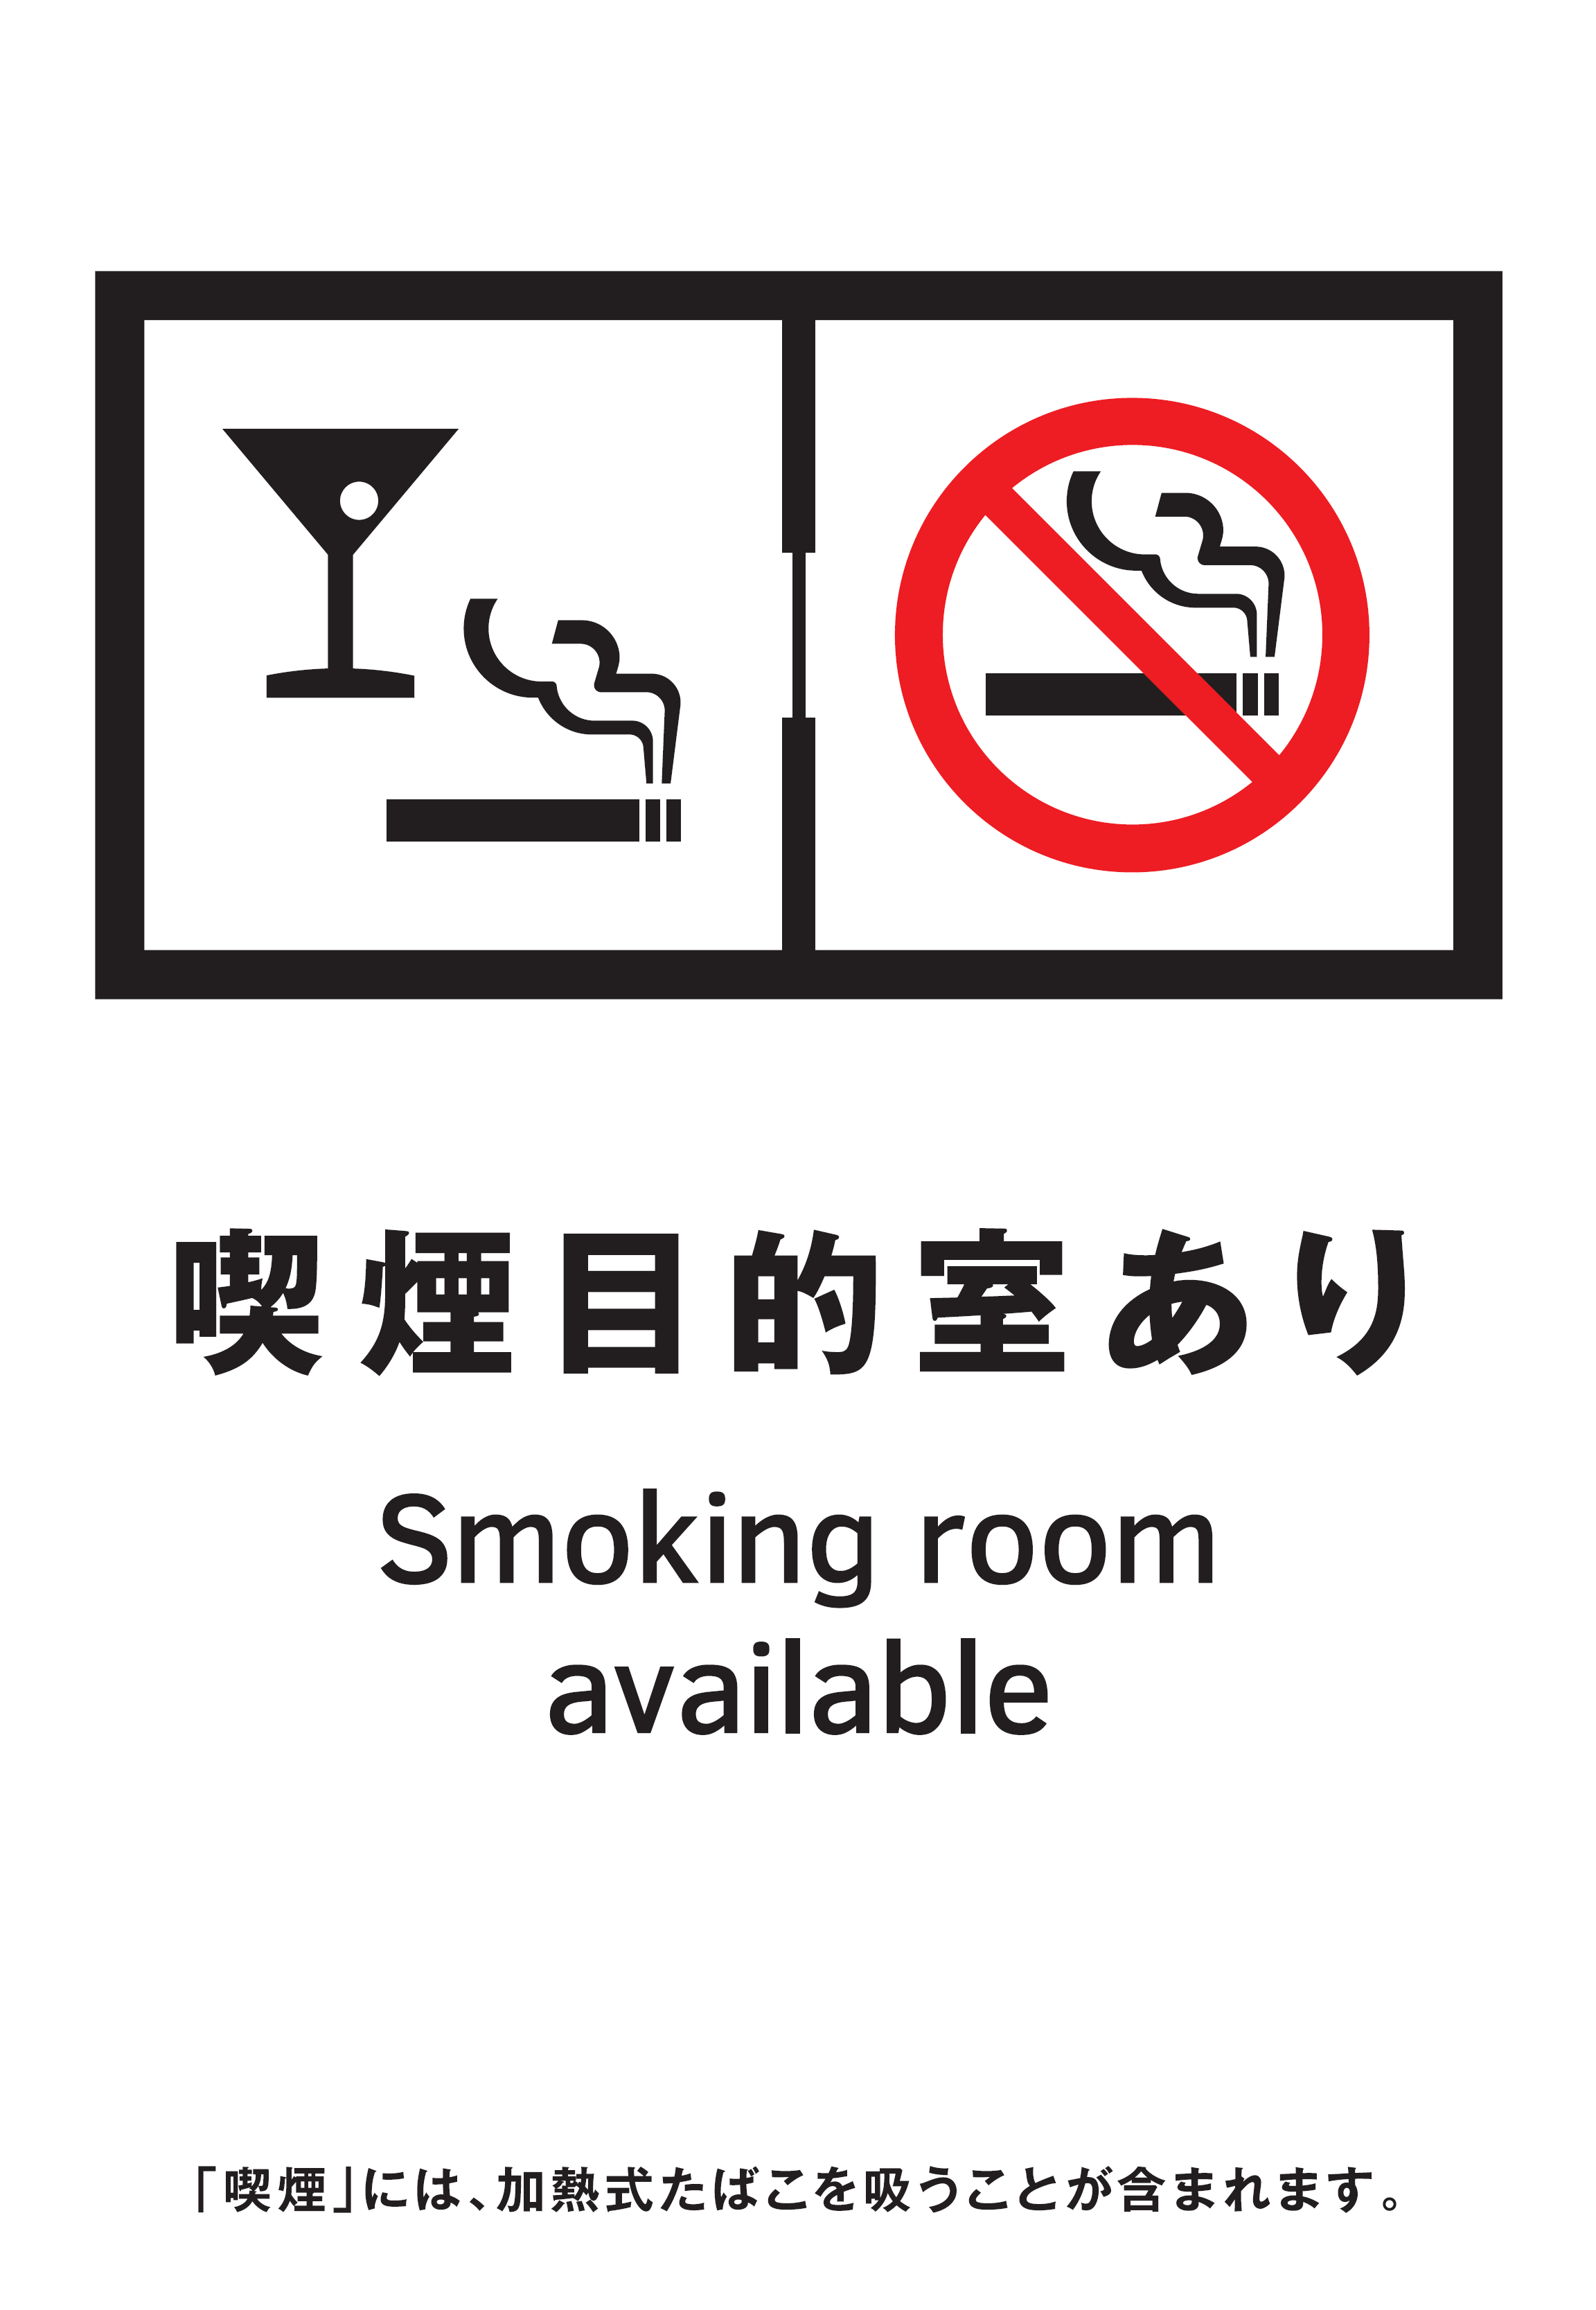 喫煙目的室設置施設の標識